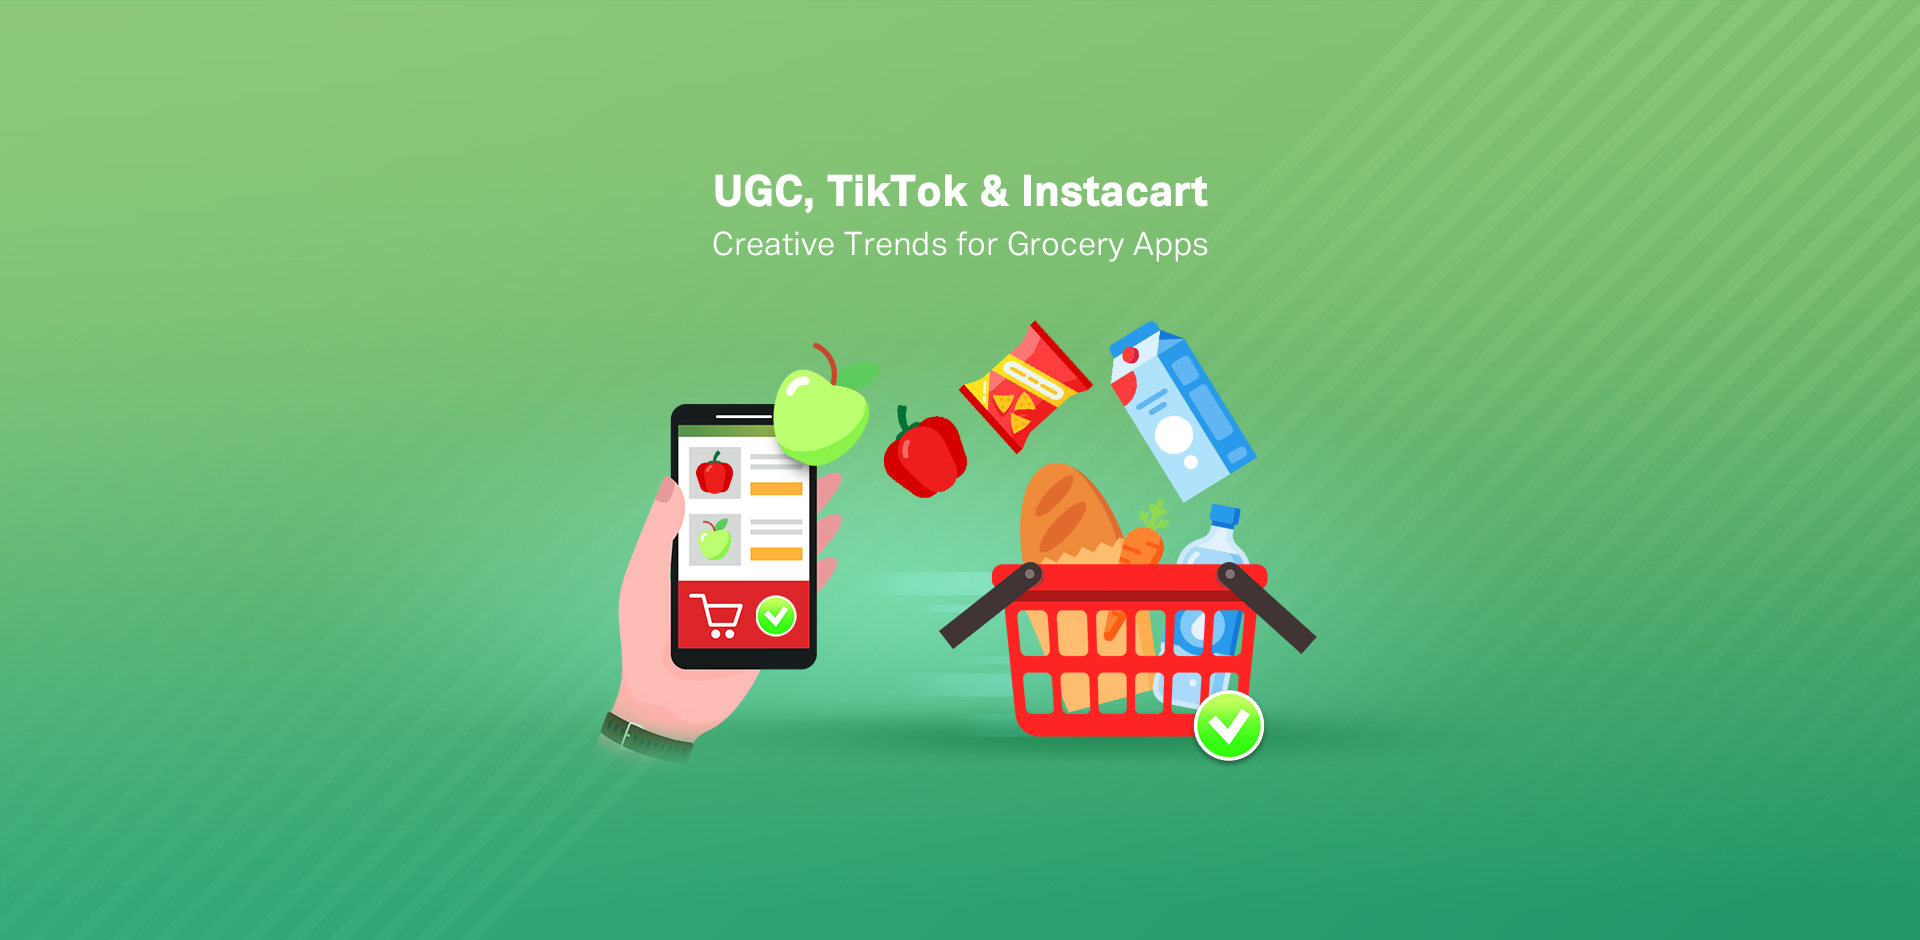 UGC, TikTok & Instacart Creative Trends for Grocery Apps